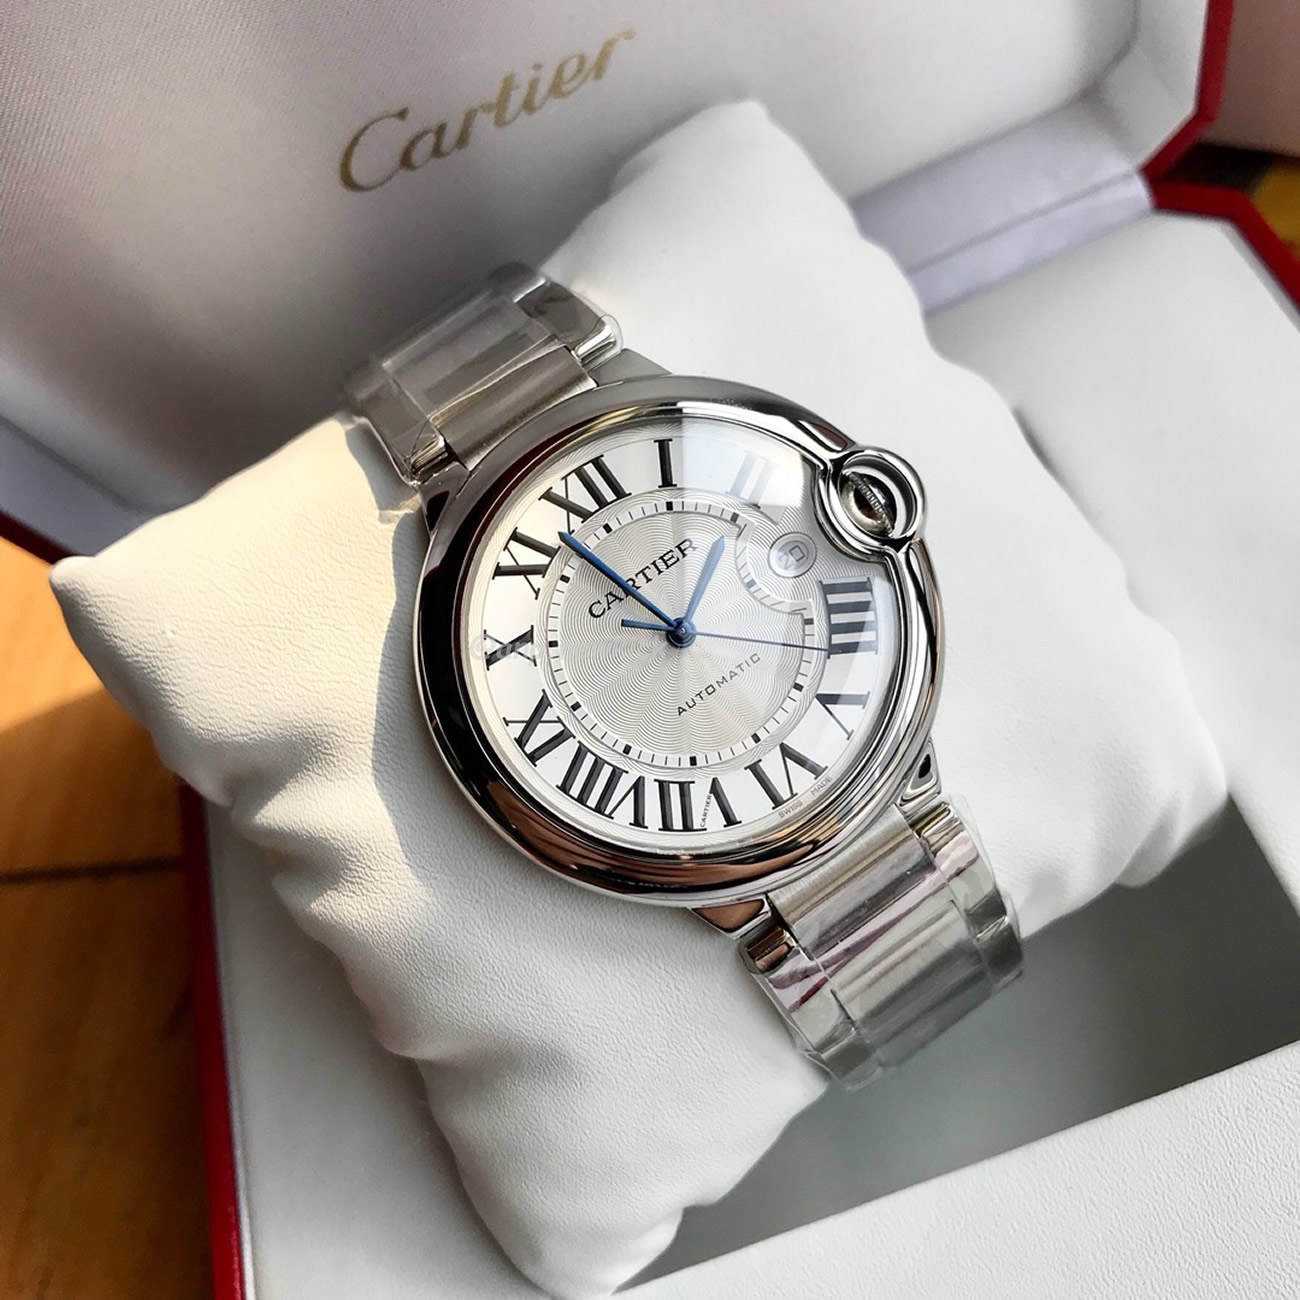 Cartier Ballon Bleu De Cartier Wrist Watch (2) - newkick.org